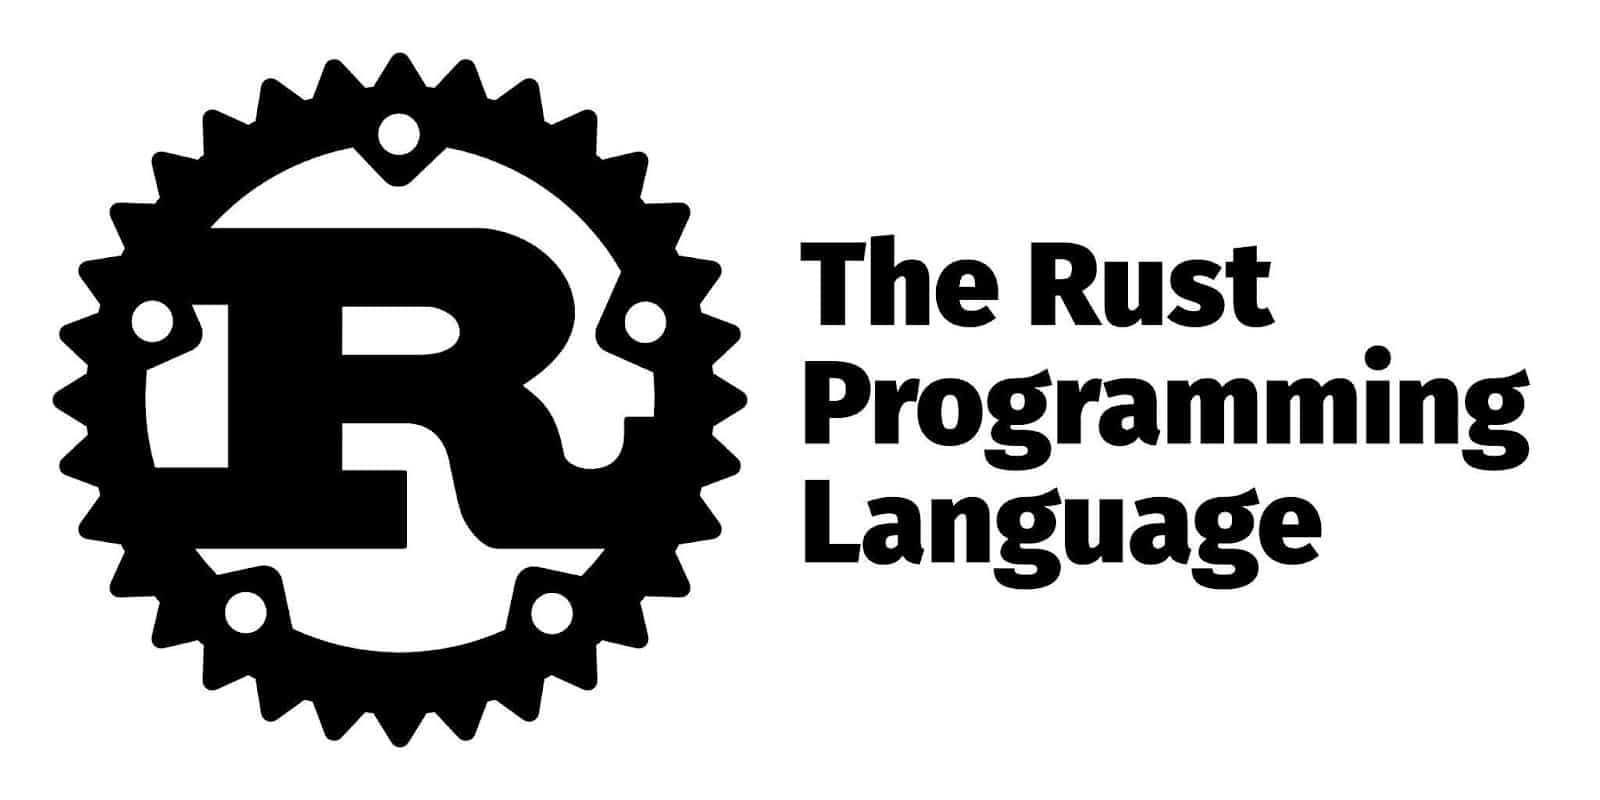 Het Rust logo met de naam in vette letters rechts op de afbeelding.